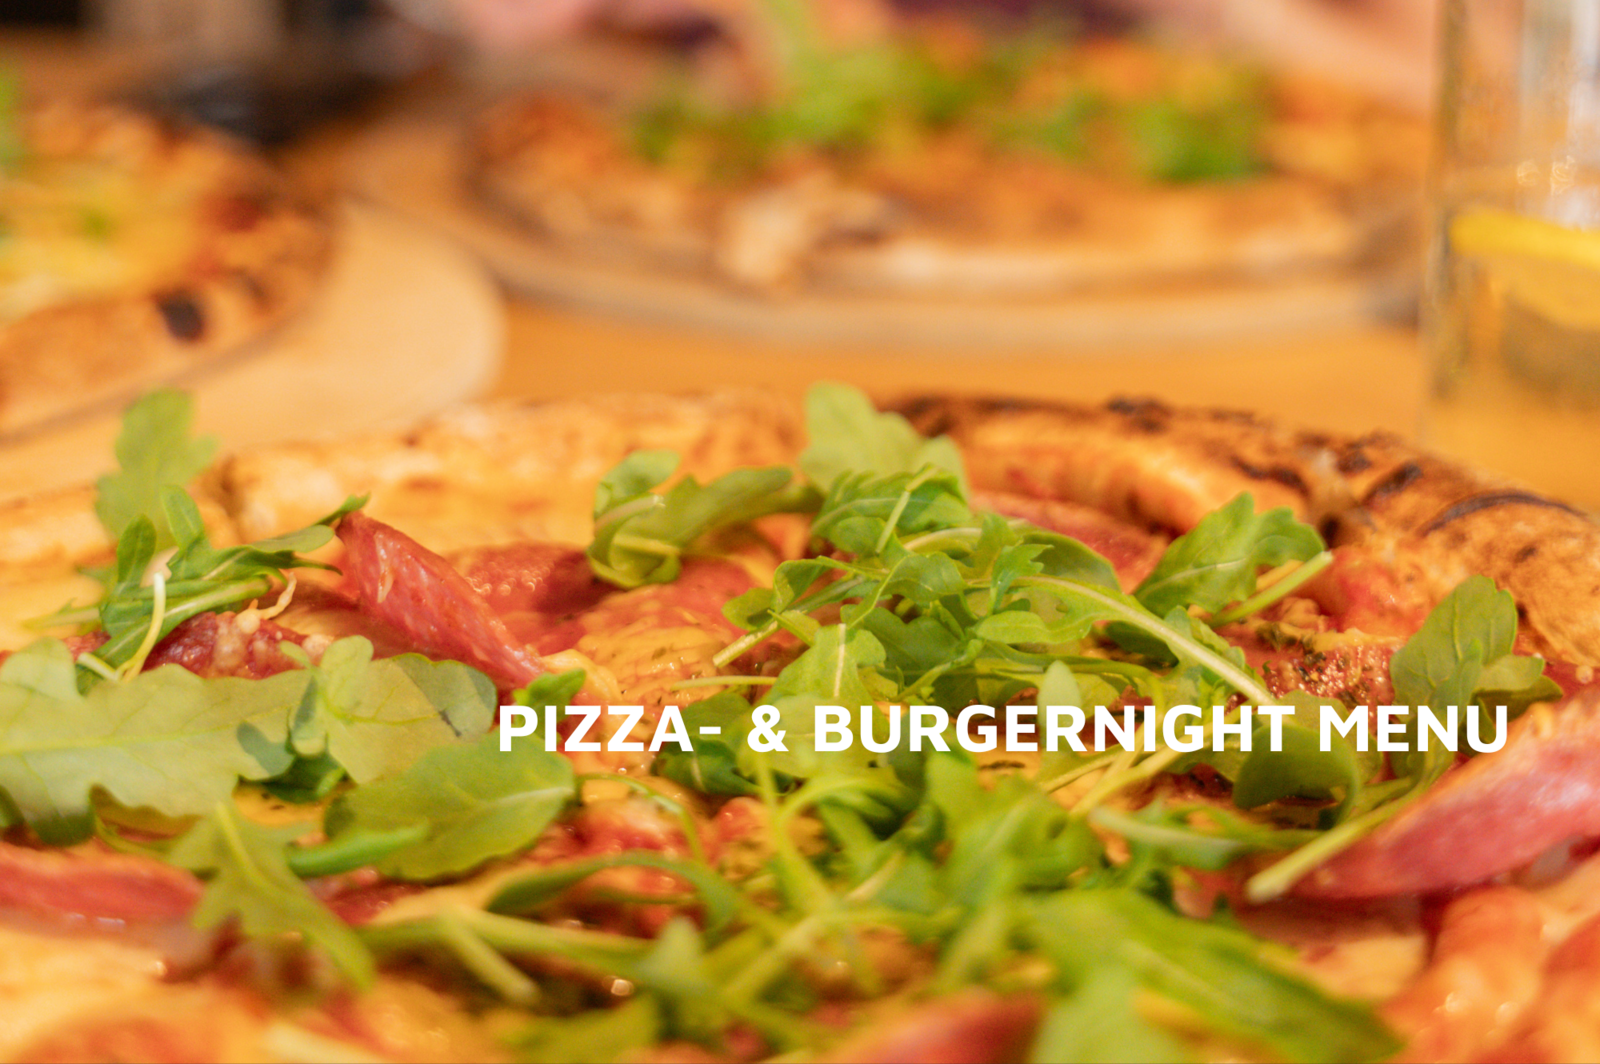 Bekijk hier het Pizza- & Burgernight menu